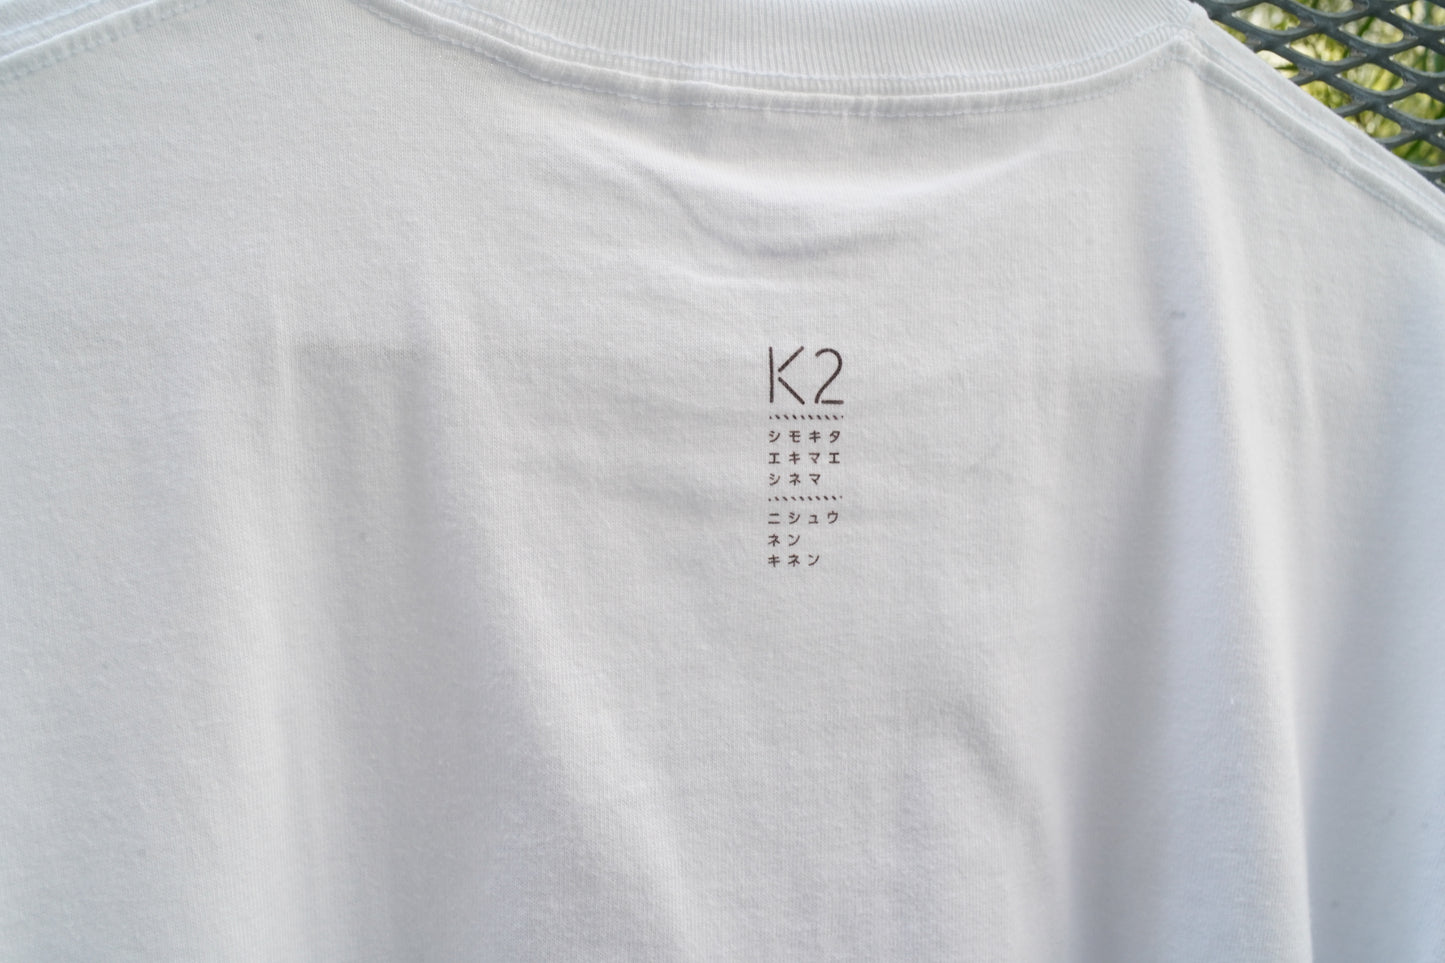 K2 2周年記念Tシャツ